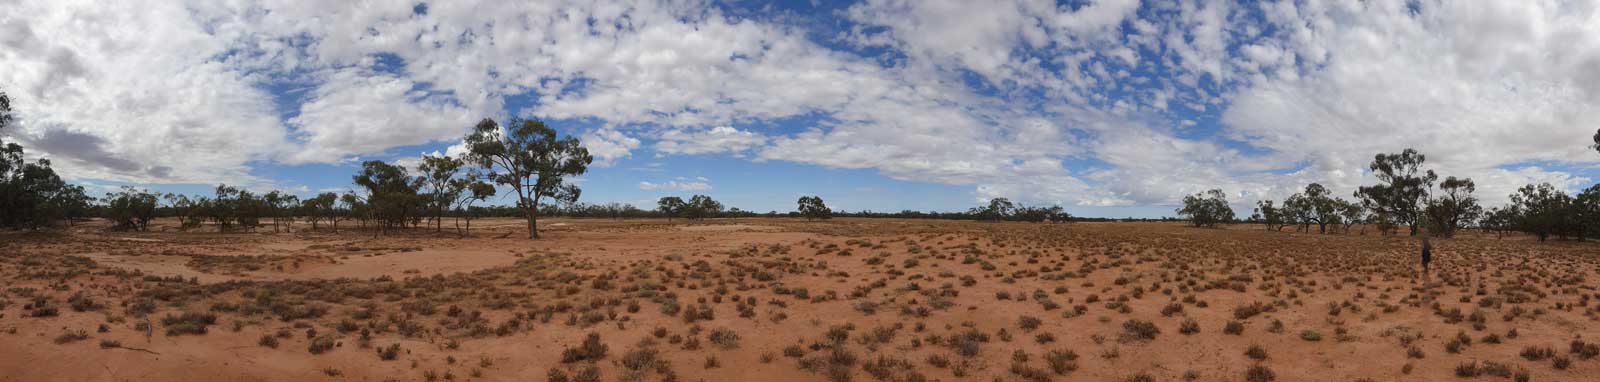 Australian outback, wide open arid land